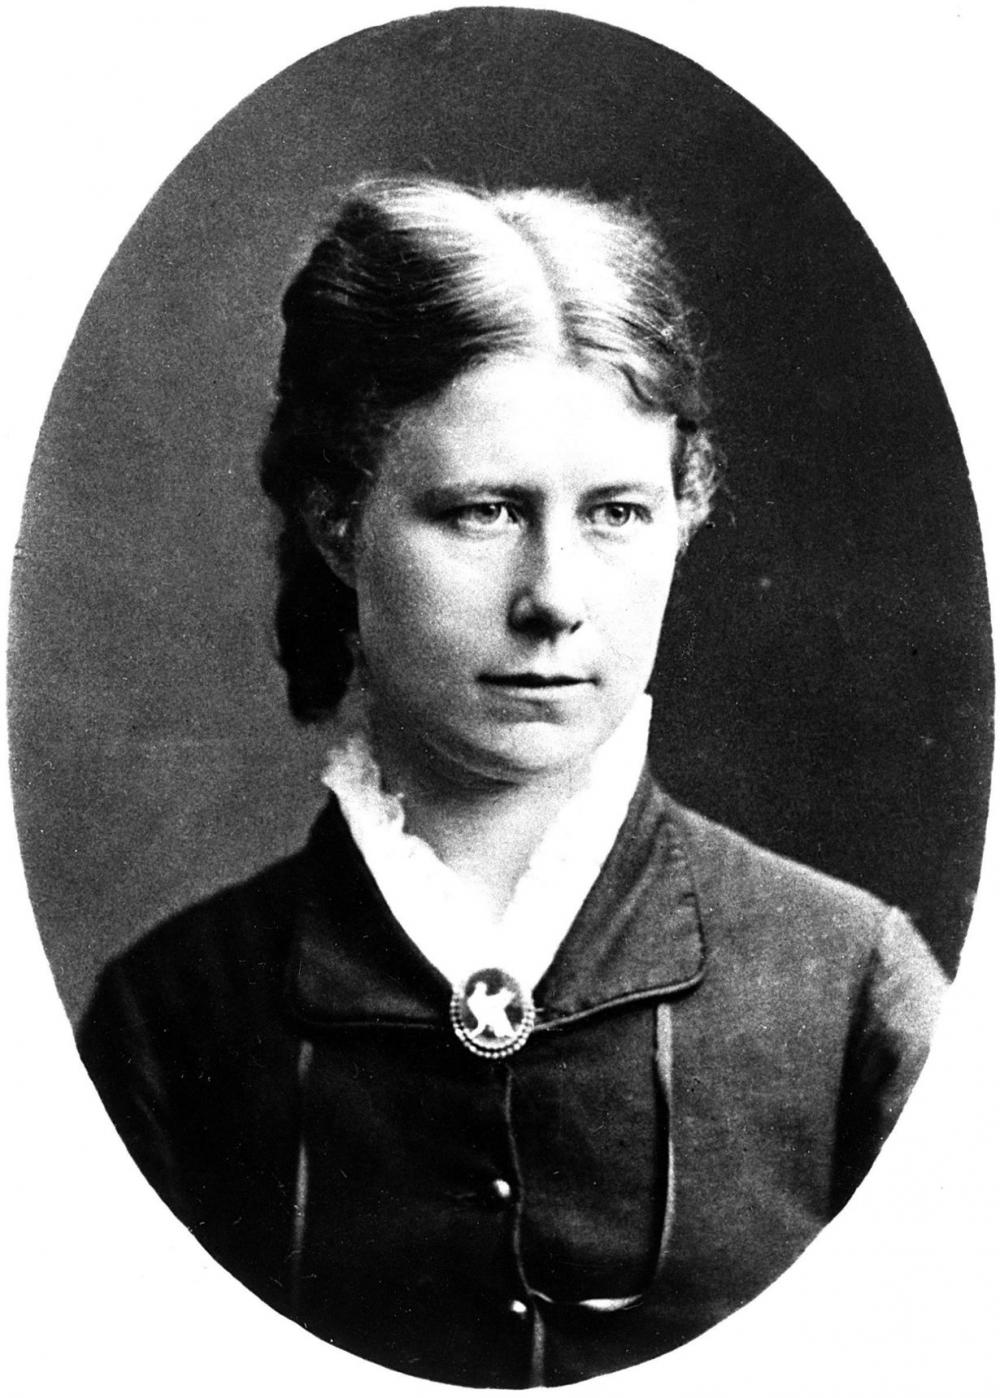 Nielsine Nielsen